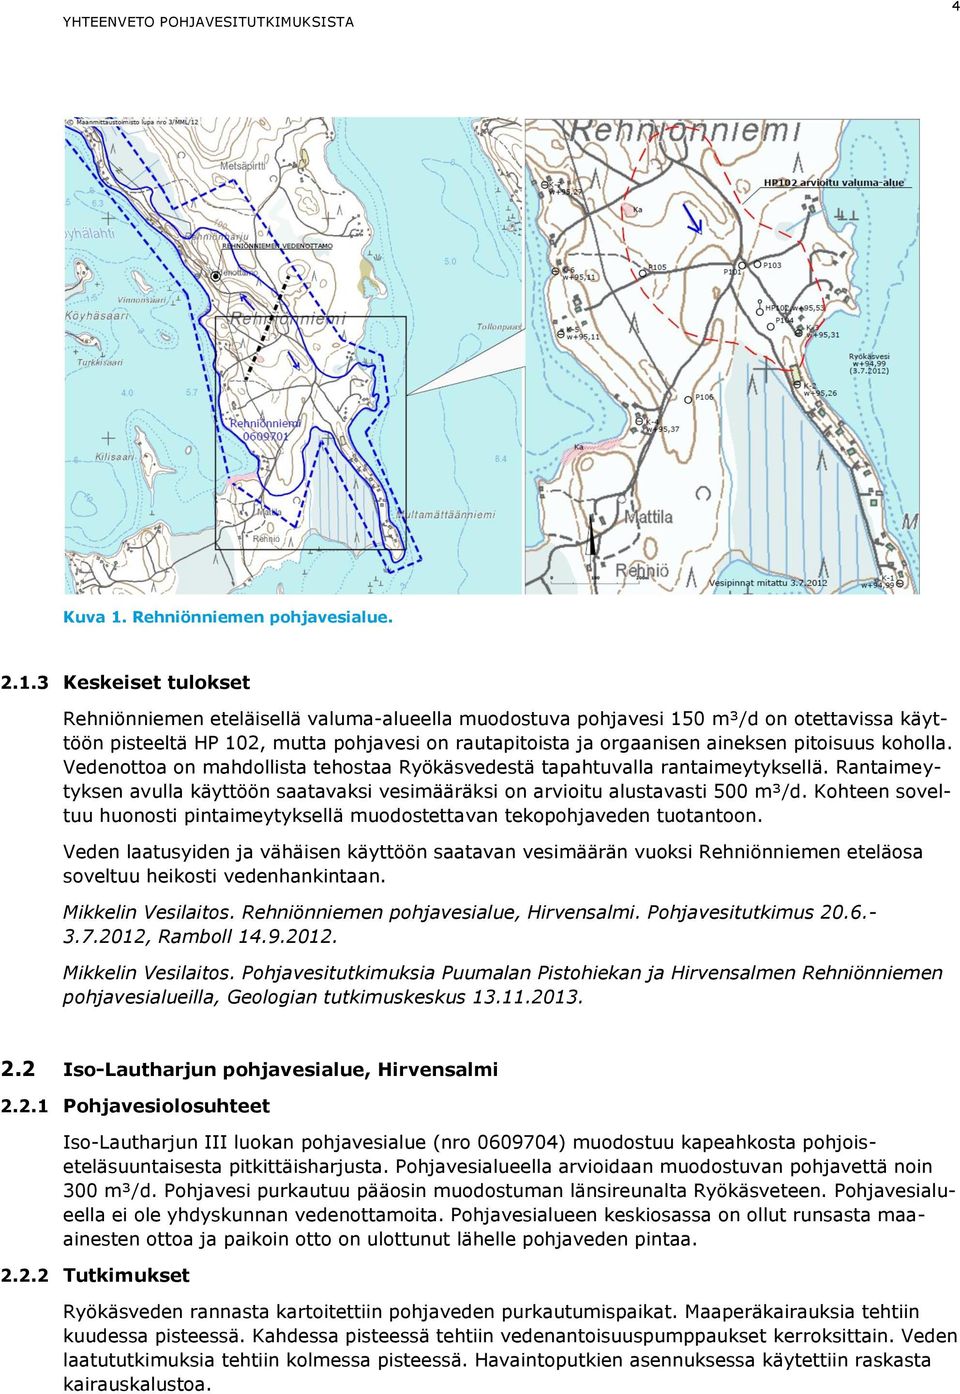 3 Keskeiset tulokset Rehniönniemen eteläisellä valuma-alueella muodostuva pohjavesi 150 m³/d on otettavissa käyttöön pisteeltä HP 102, mutta pohjavesi on rautapitoista ja orgaanisen aineksen